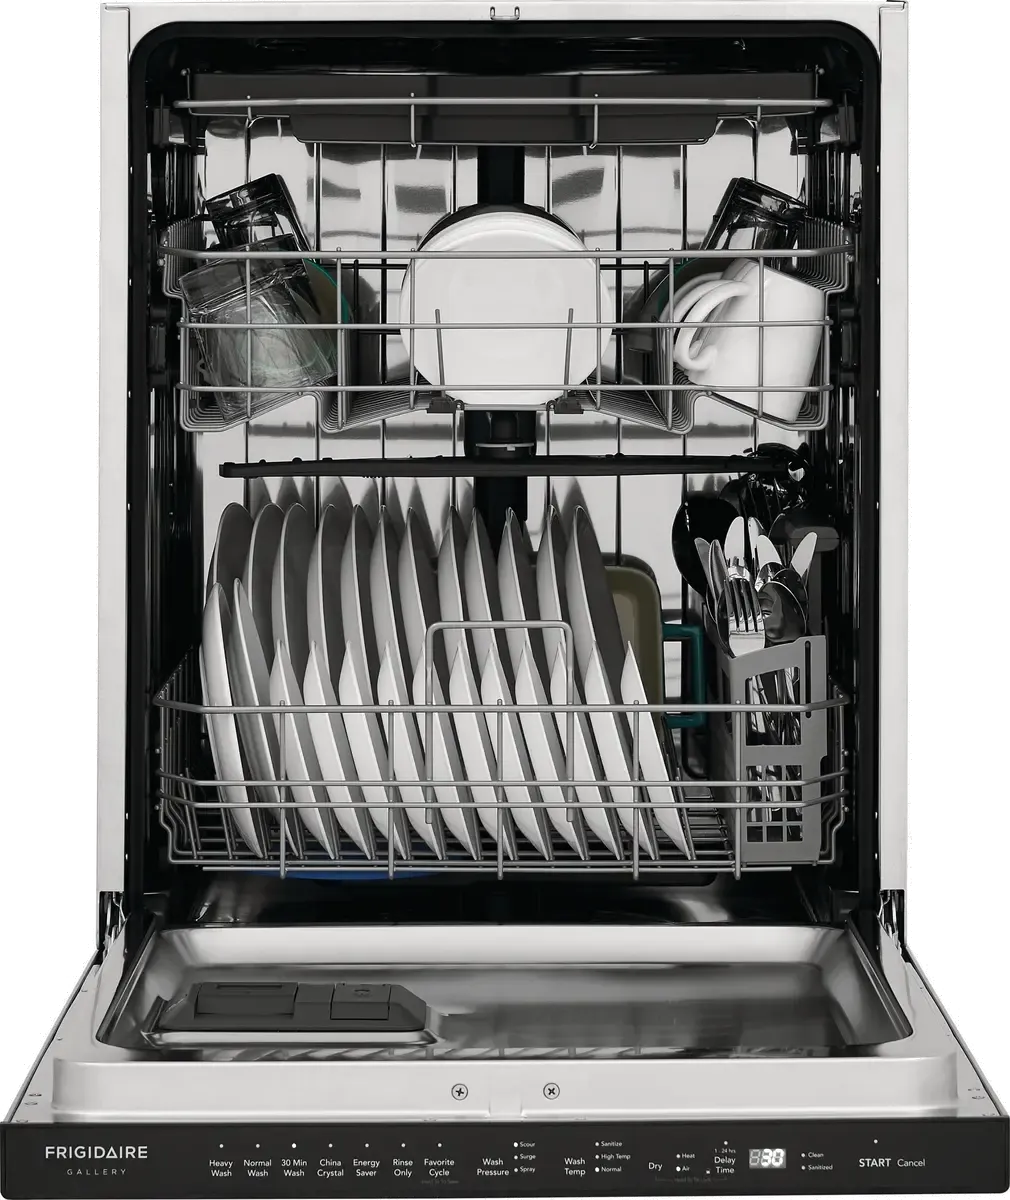 Frigidaire Top Control Dishwasher FGIP2479SF